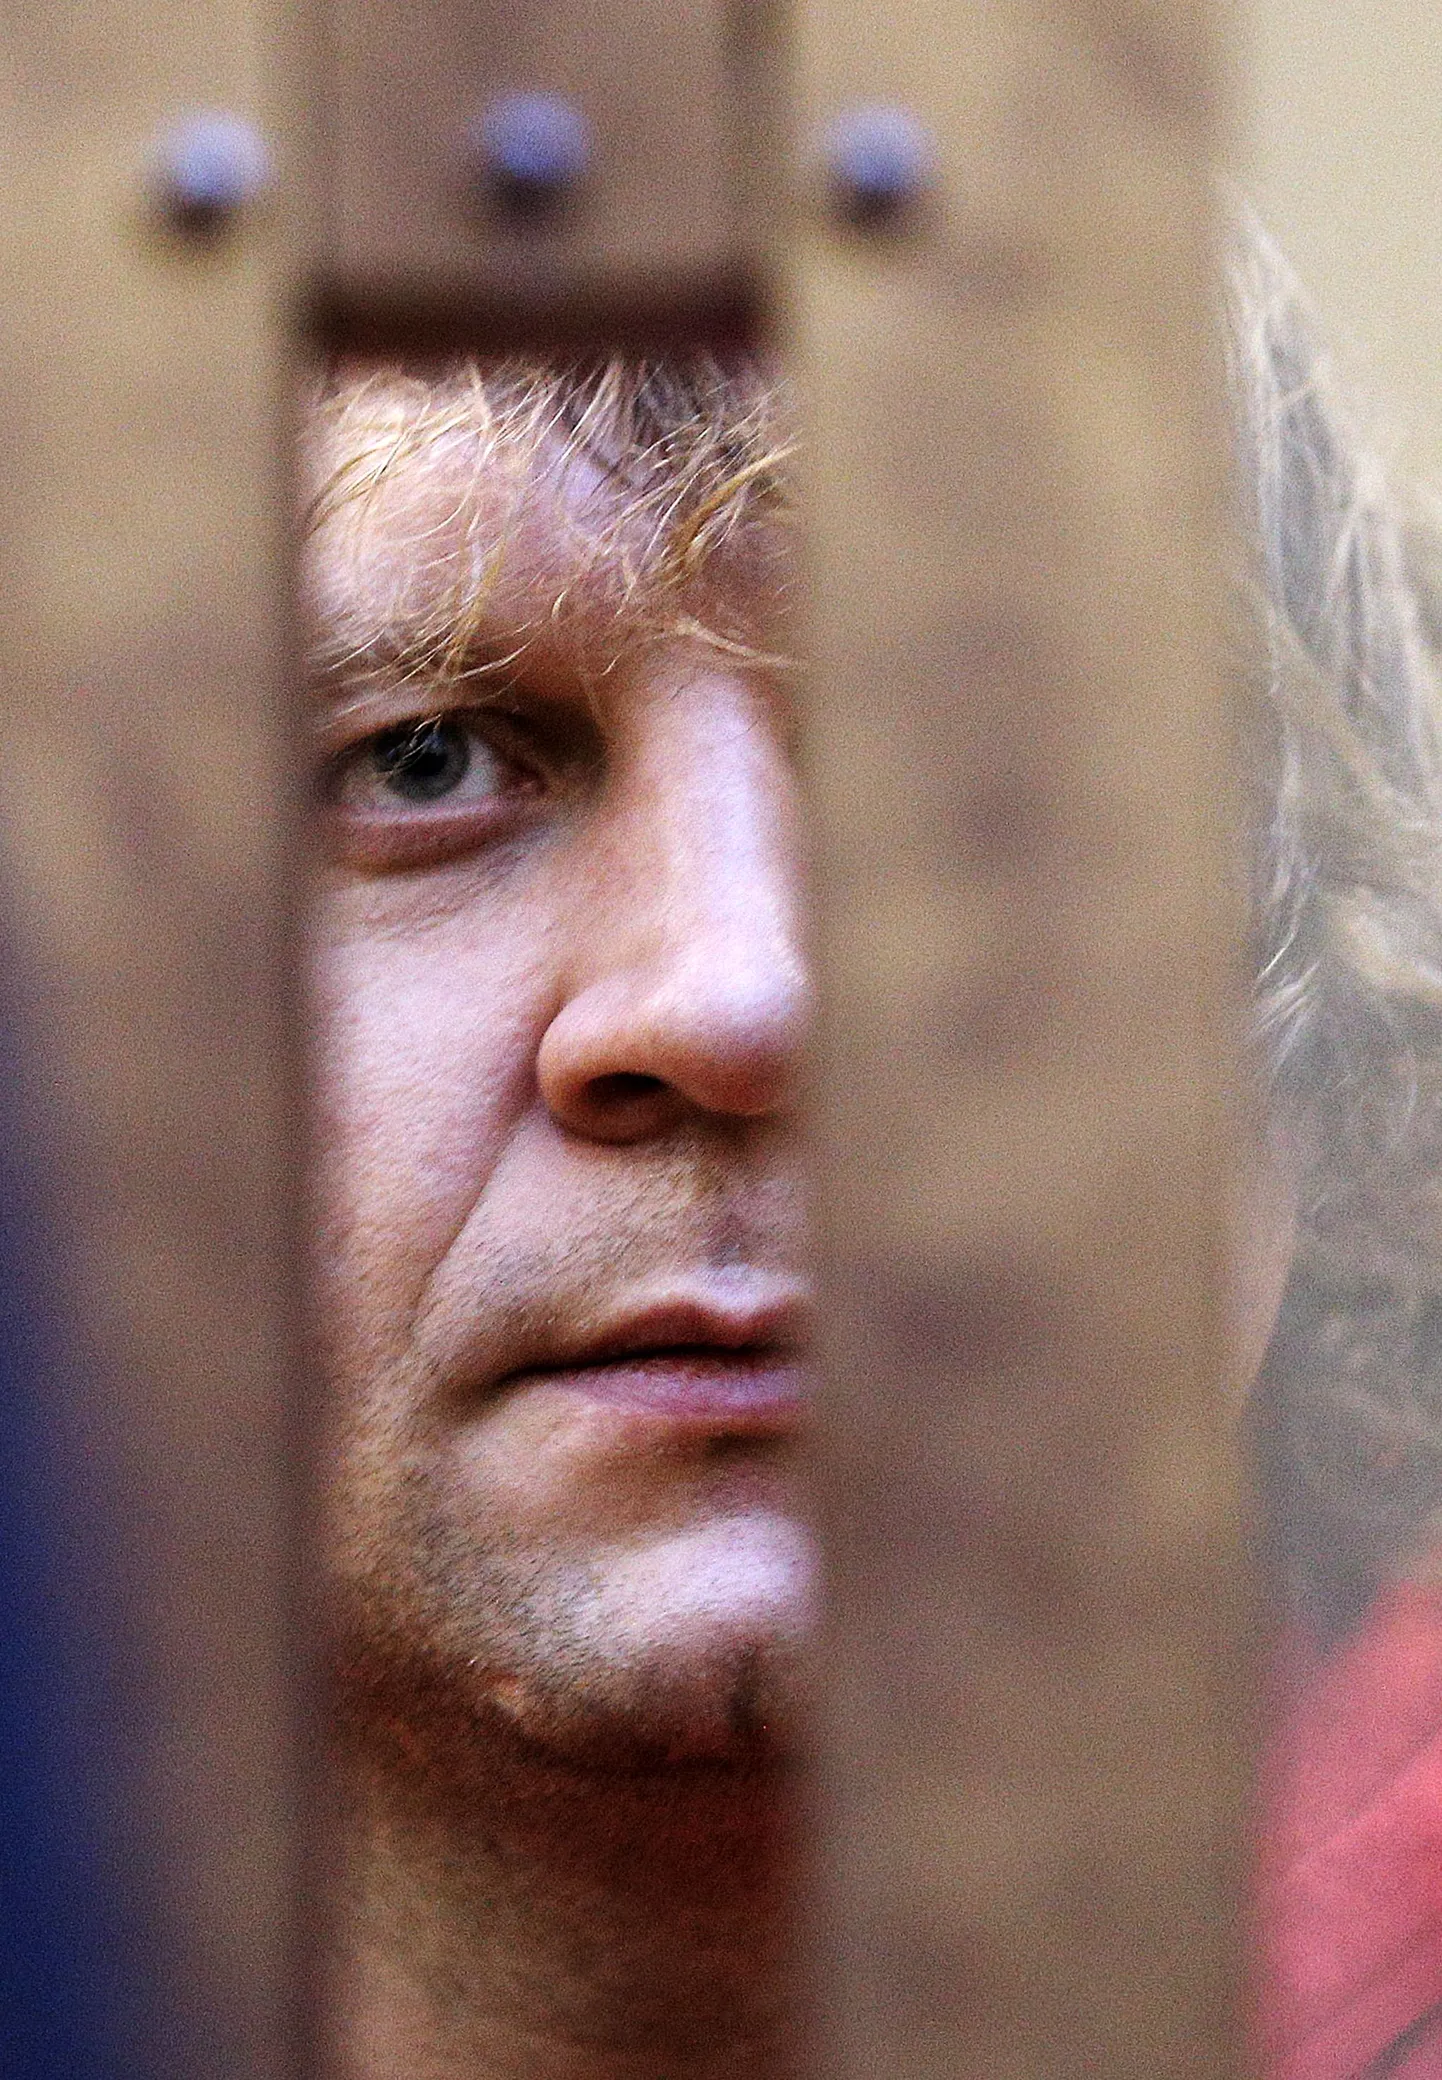 Александр Емельяненко в зале суда.